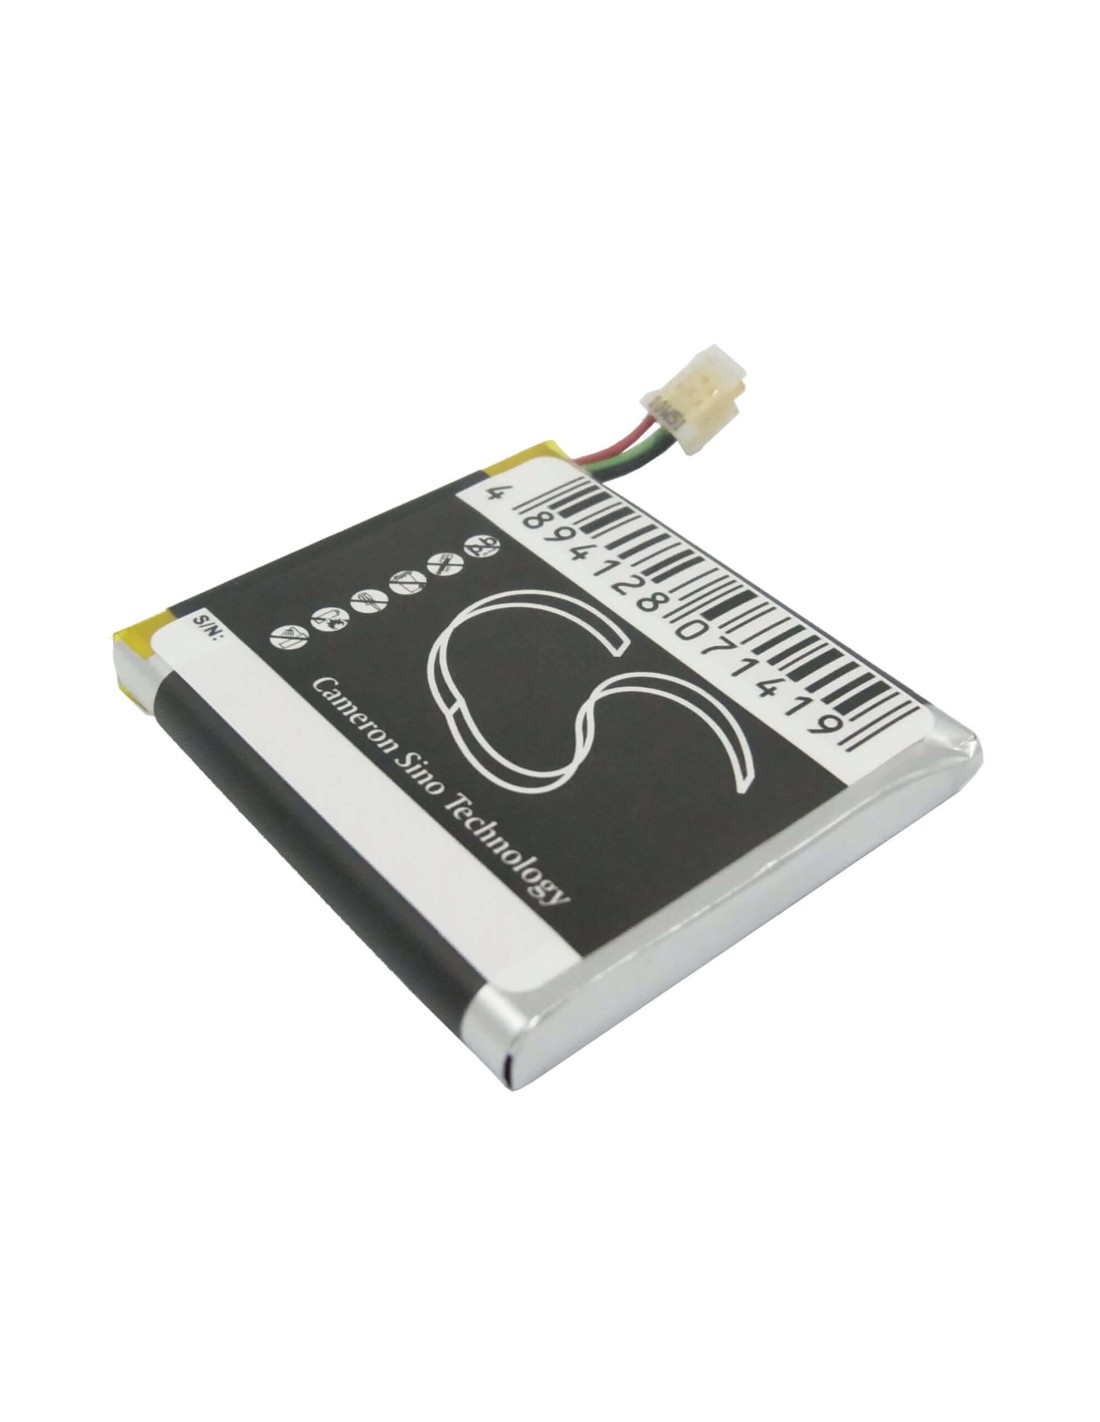 Battery for Sony Ericsson Xperia X10 Mini, E10i 3.7V, 900mAh - 3.33Wh